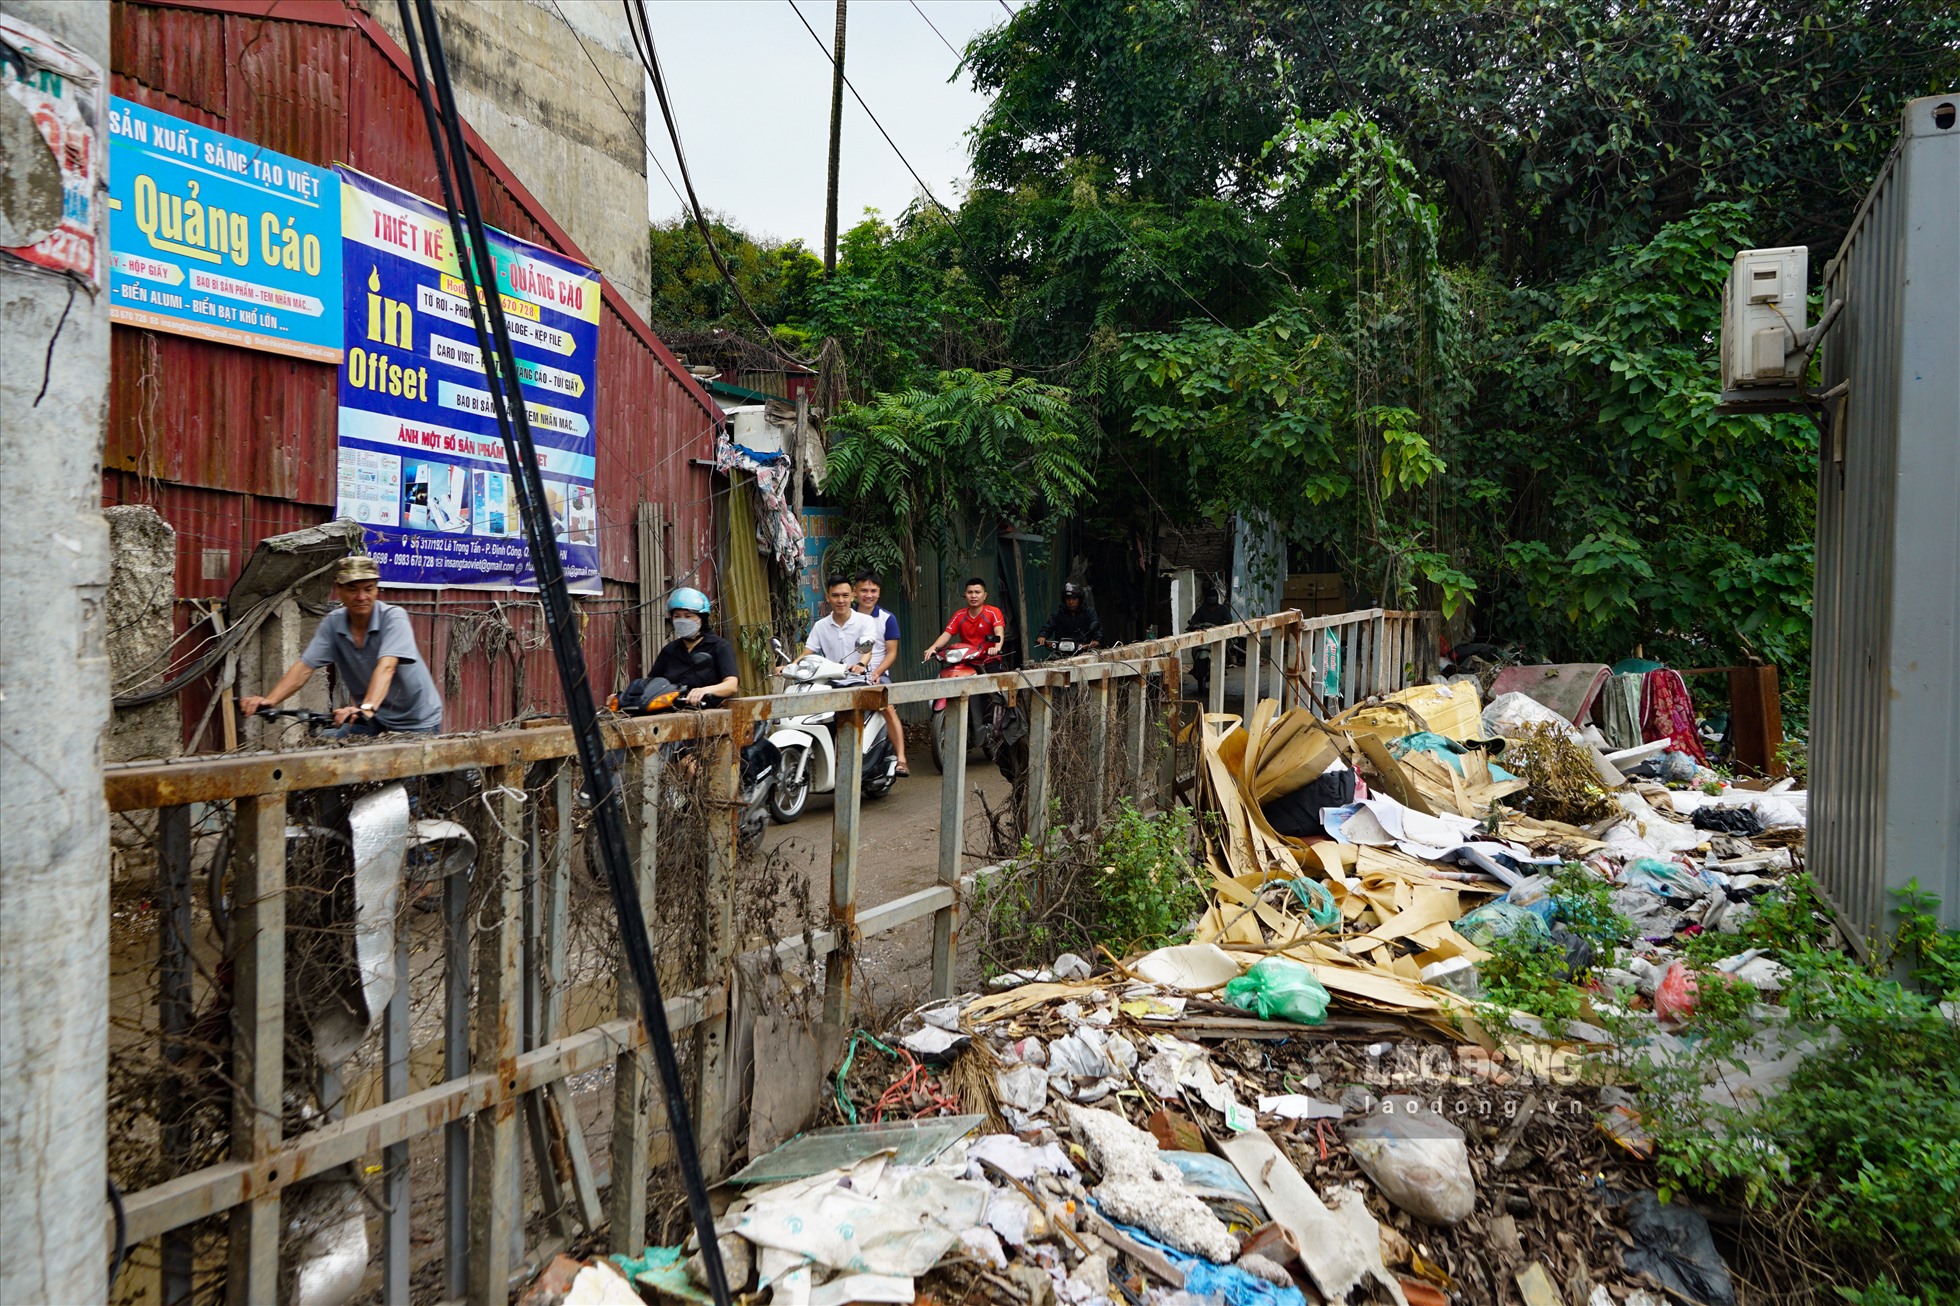 Ngày 11.5, theo ghi nhận của Lao Động, dọc ngõ 298 phố Trần Điền là hàng loạt bãi rác thải, phế liệu chất đống. Rác để lâu ngày không được dọn dẹp, xử lý ngay cạnh khu dân cư.